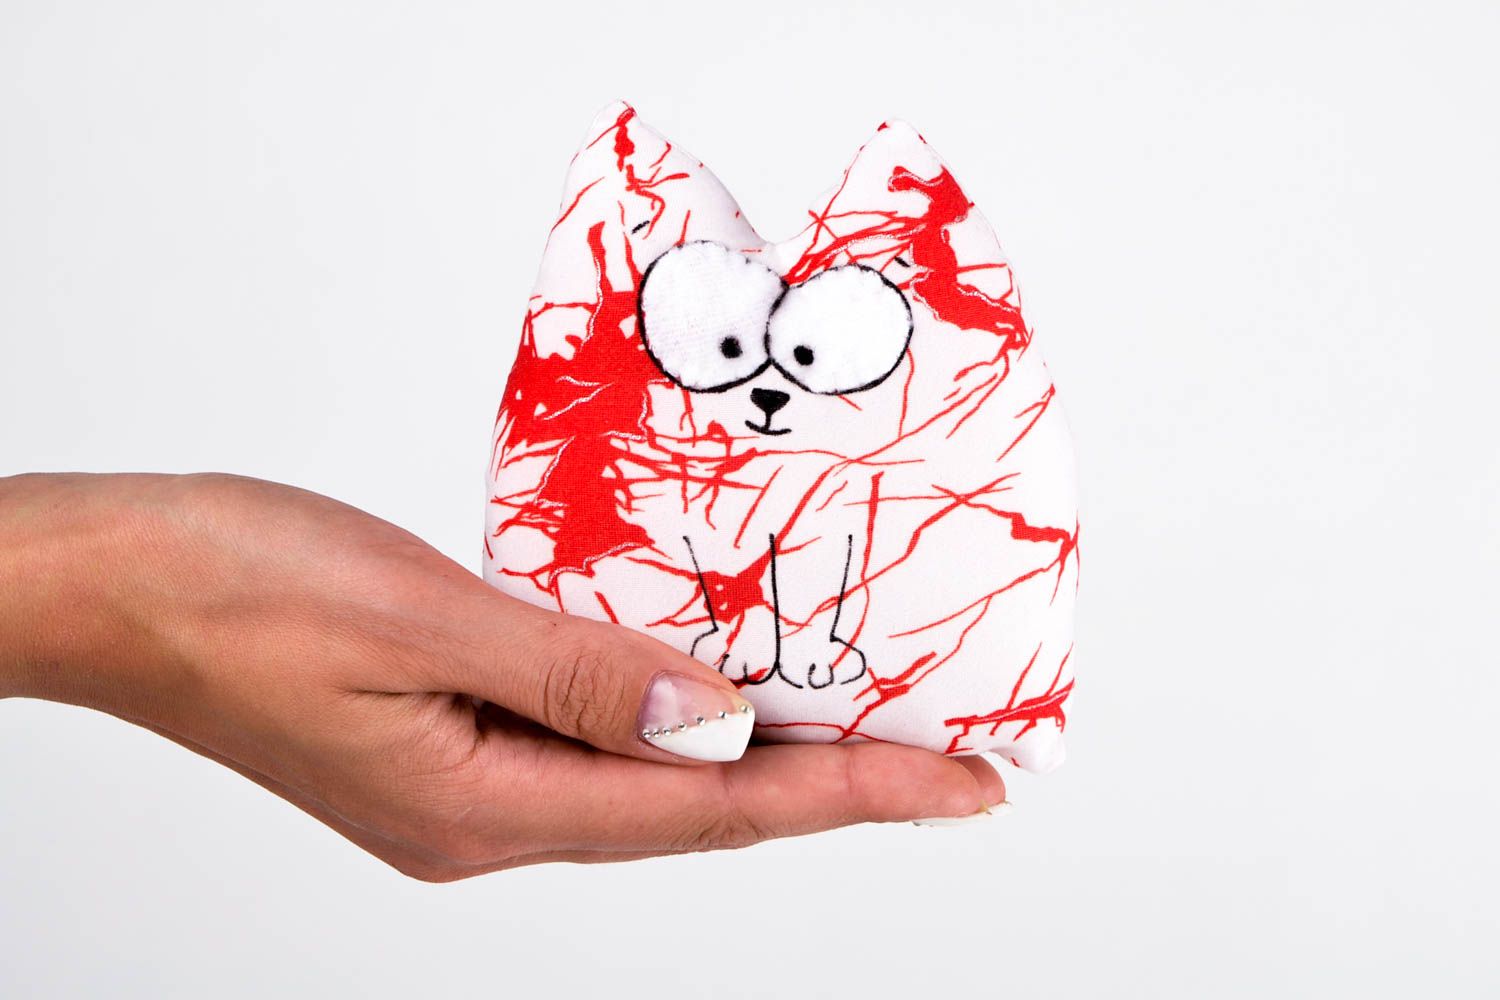 Игрушка из ткани мягкая игрушка ручной работы авторская игрушка для ребенка фото 2